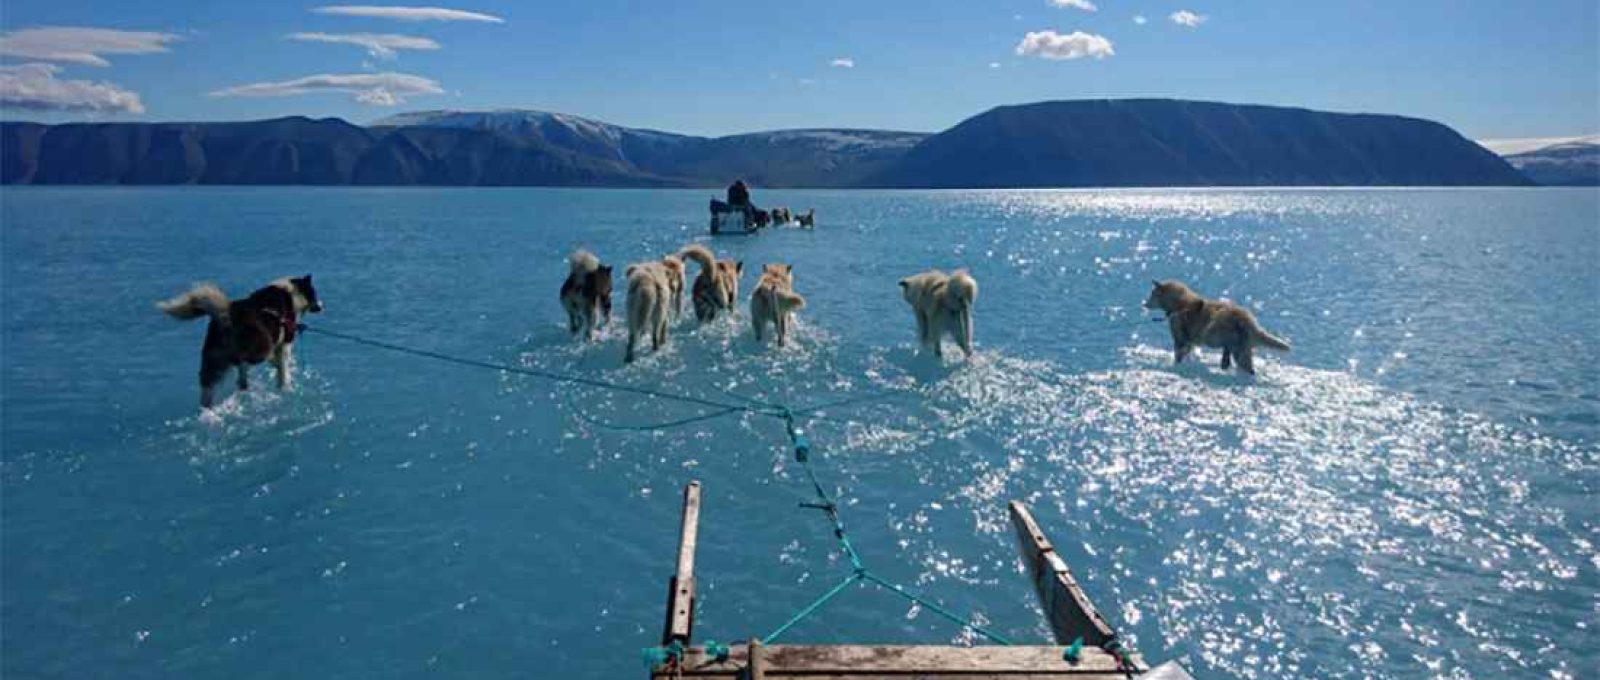 Imagem simbólica do derretimento do gelo na Groenlândia: o trenó na água (Steffen Olsen).